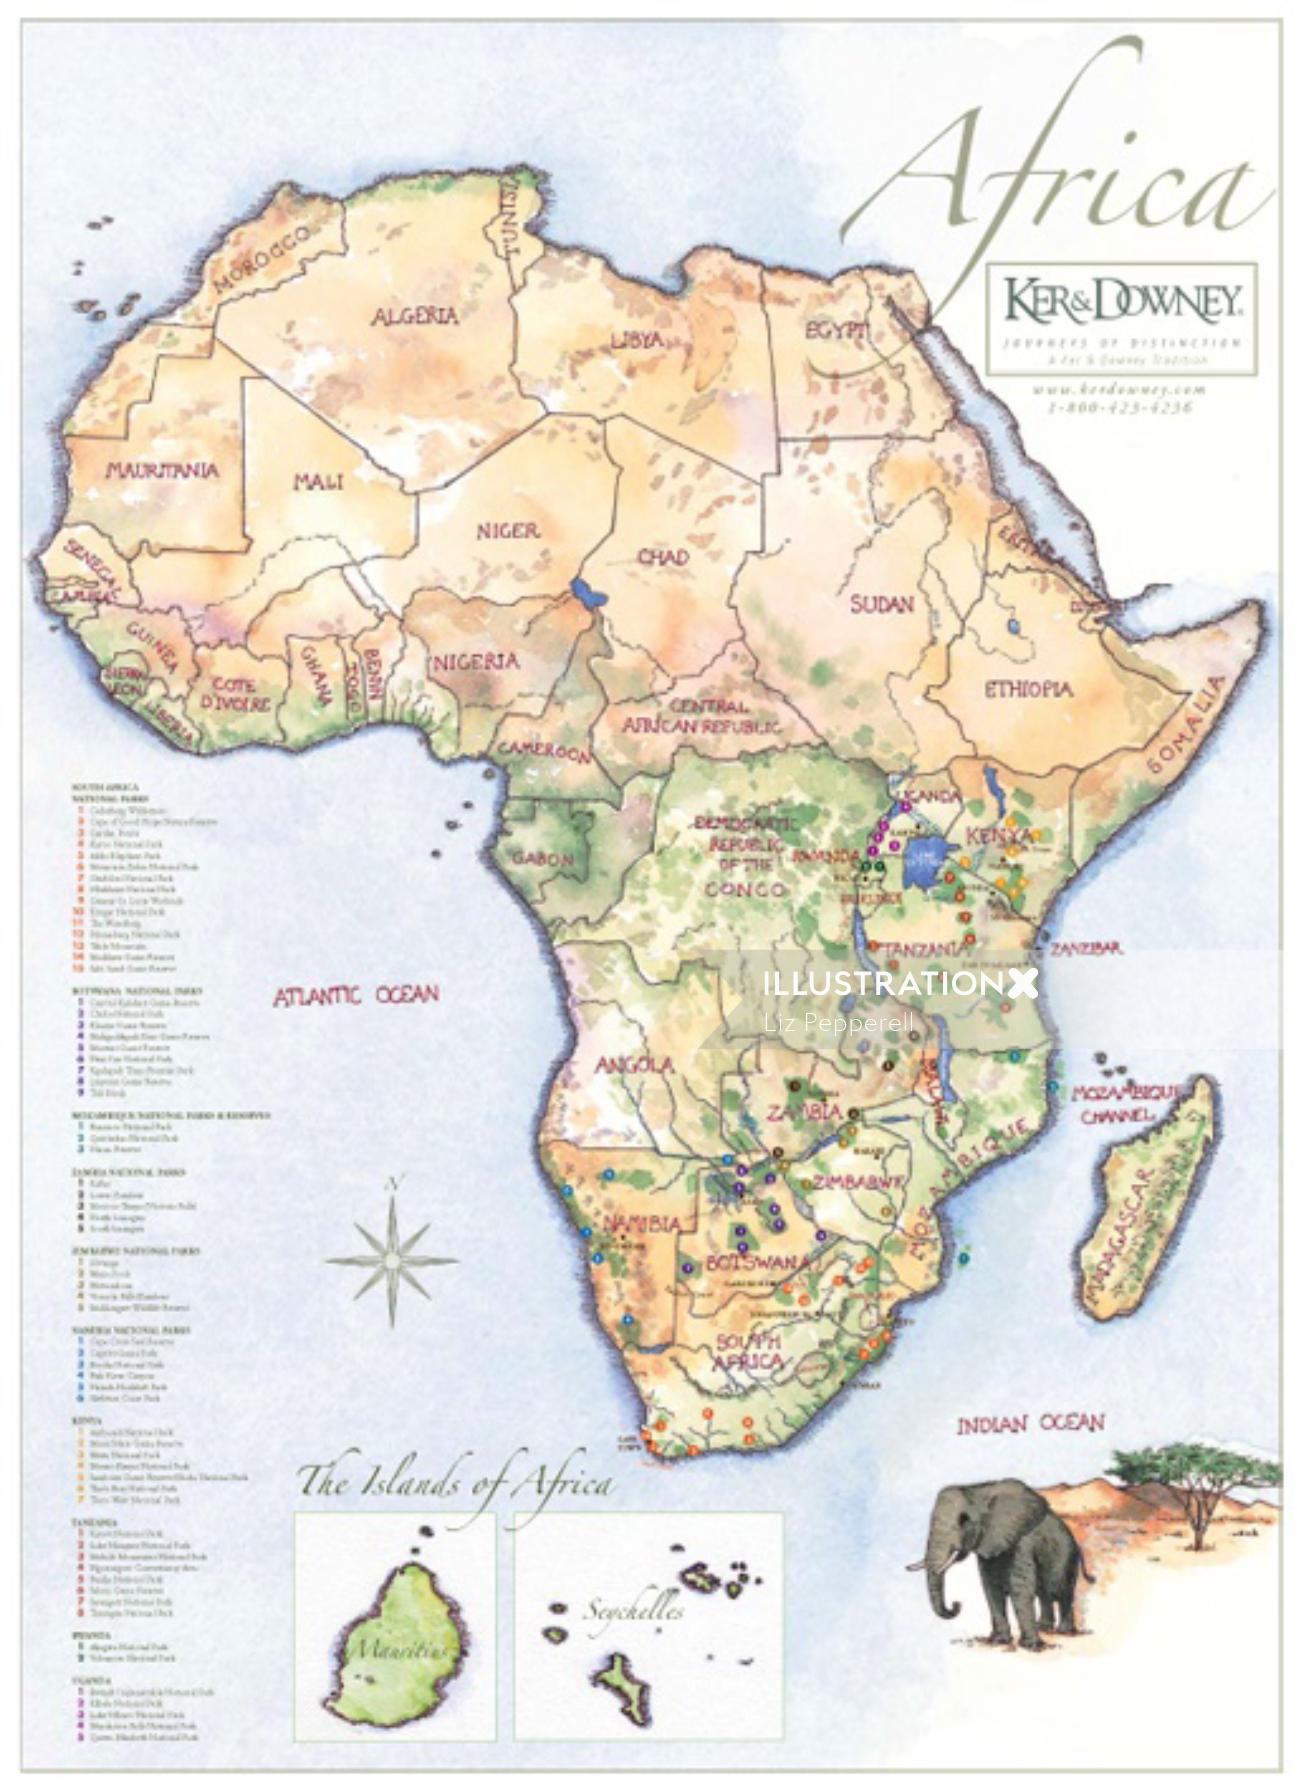 La ilustración del mapa de África